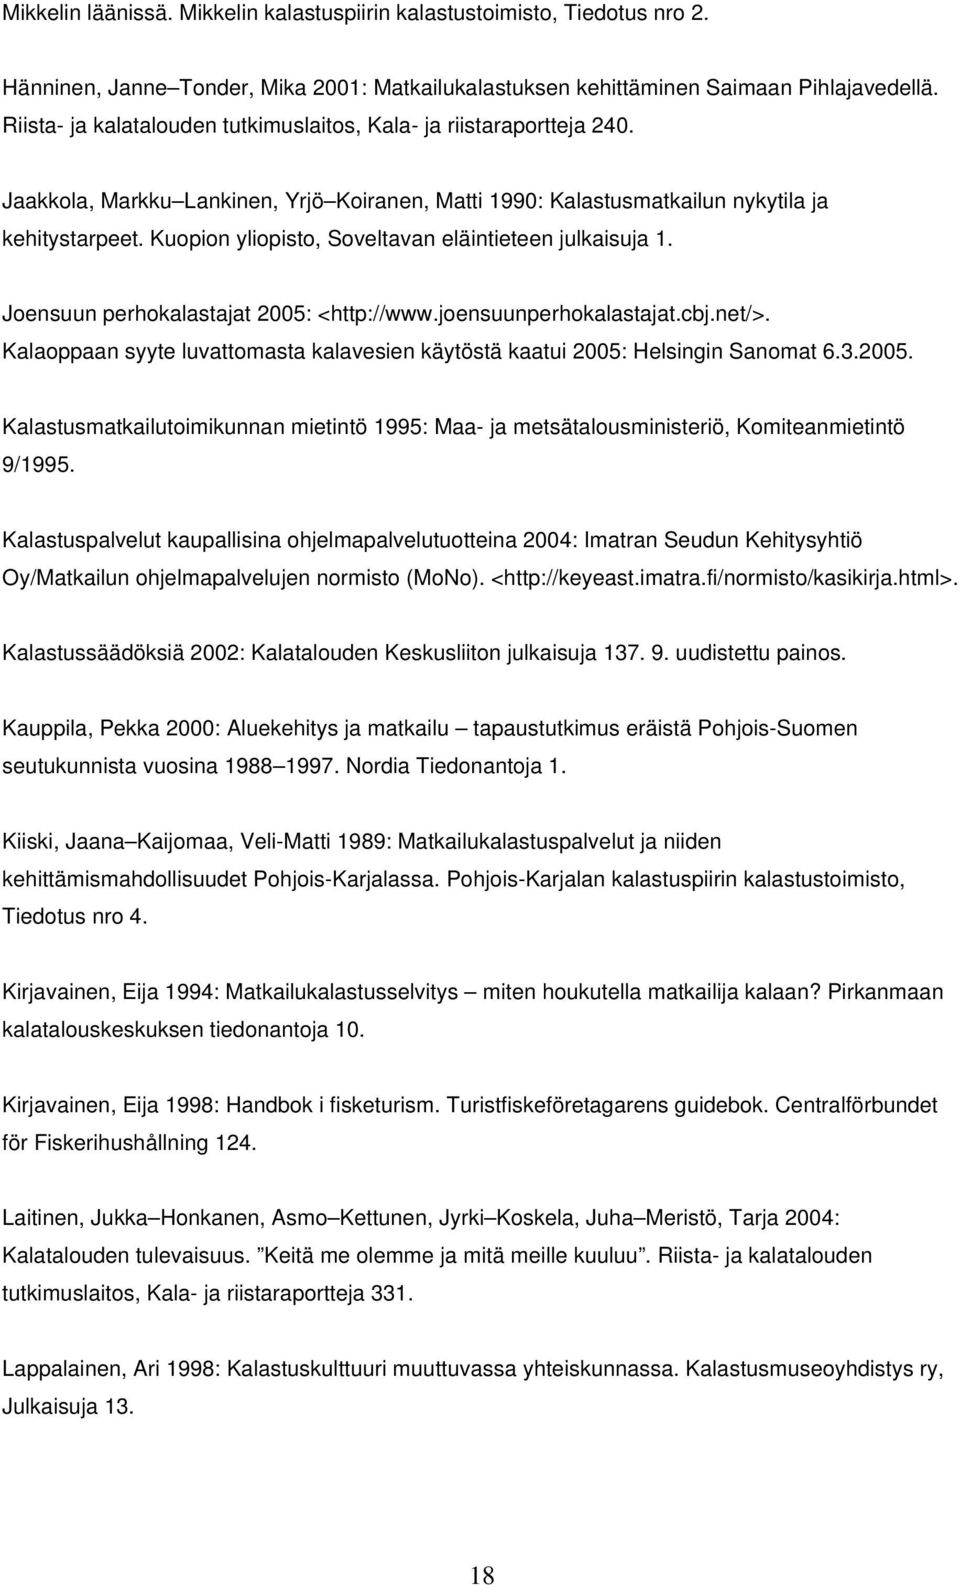 Kuopion yliopisto, Soveltavan eläintieteen julkaisuja 1. Joensuun perhokalastajat 2005: <http://www.joensuunperhokalastajat.cbj.net/>.